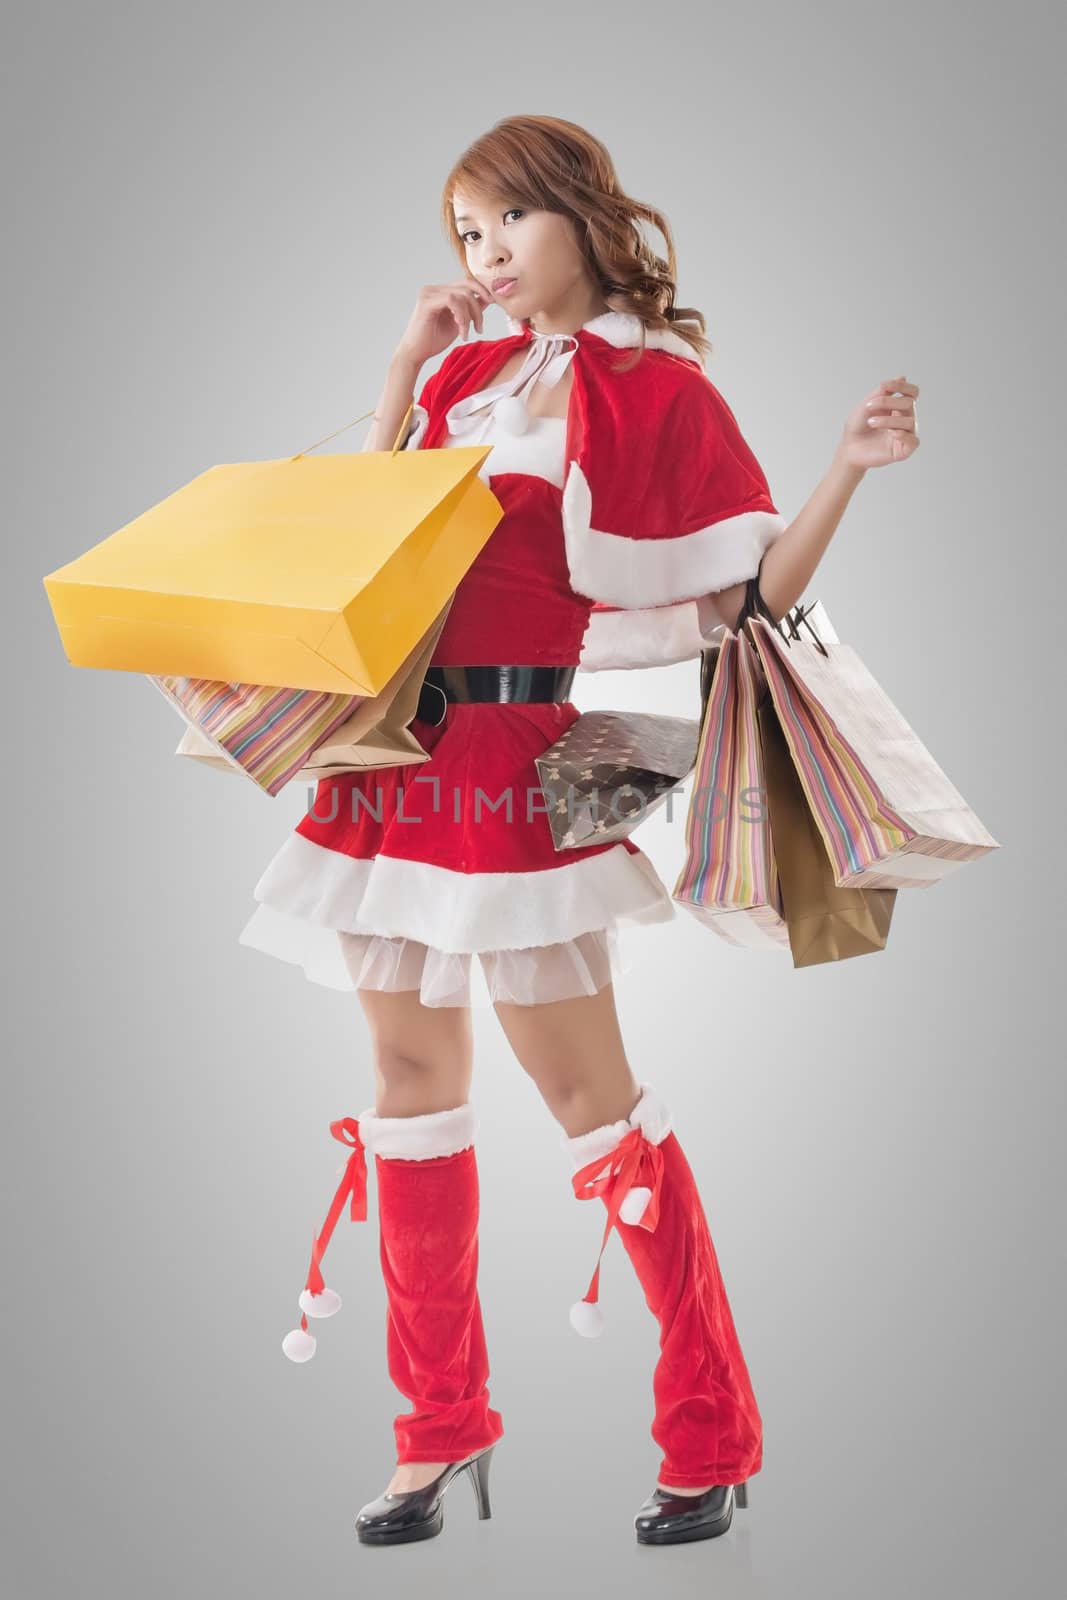 Asian Christmas girl hold shopping bags, full length portrait.